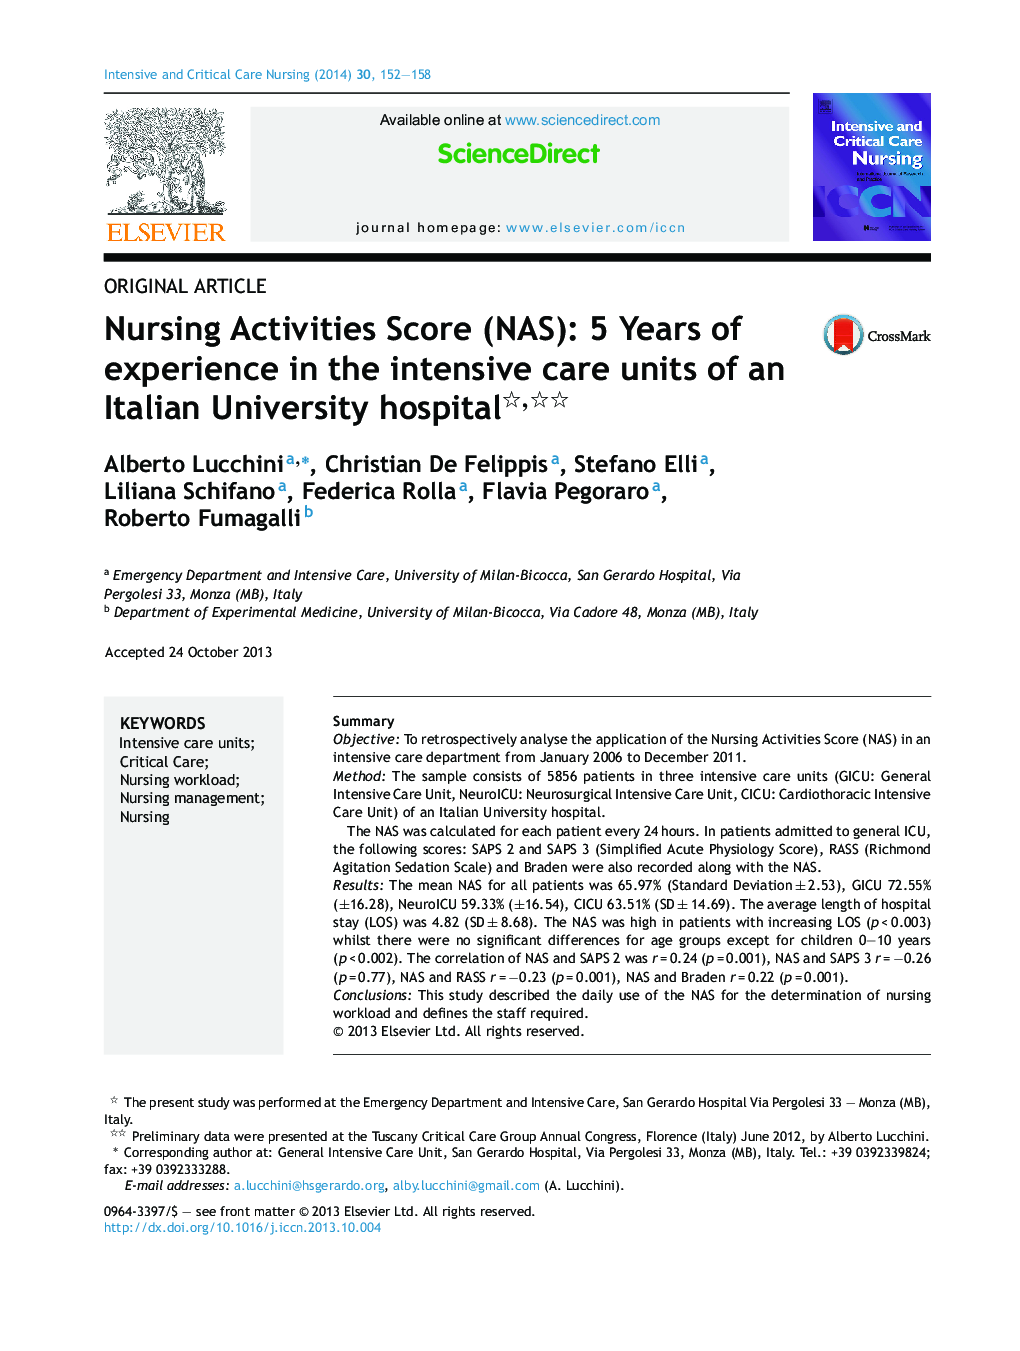  امتیازات فعالیت های پرستاری (NAS): 5 سال تجربه در بخش های مراقبت های ویژه یک بیمارستان دانشگاهی ایتالیا